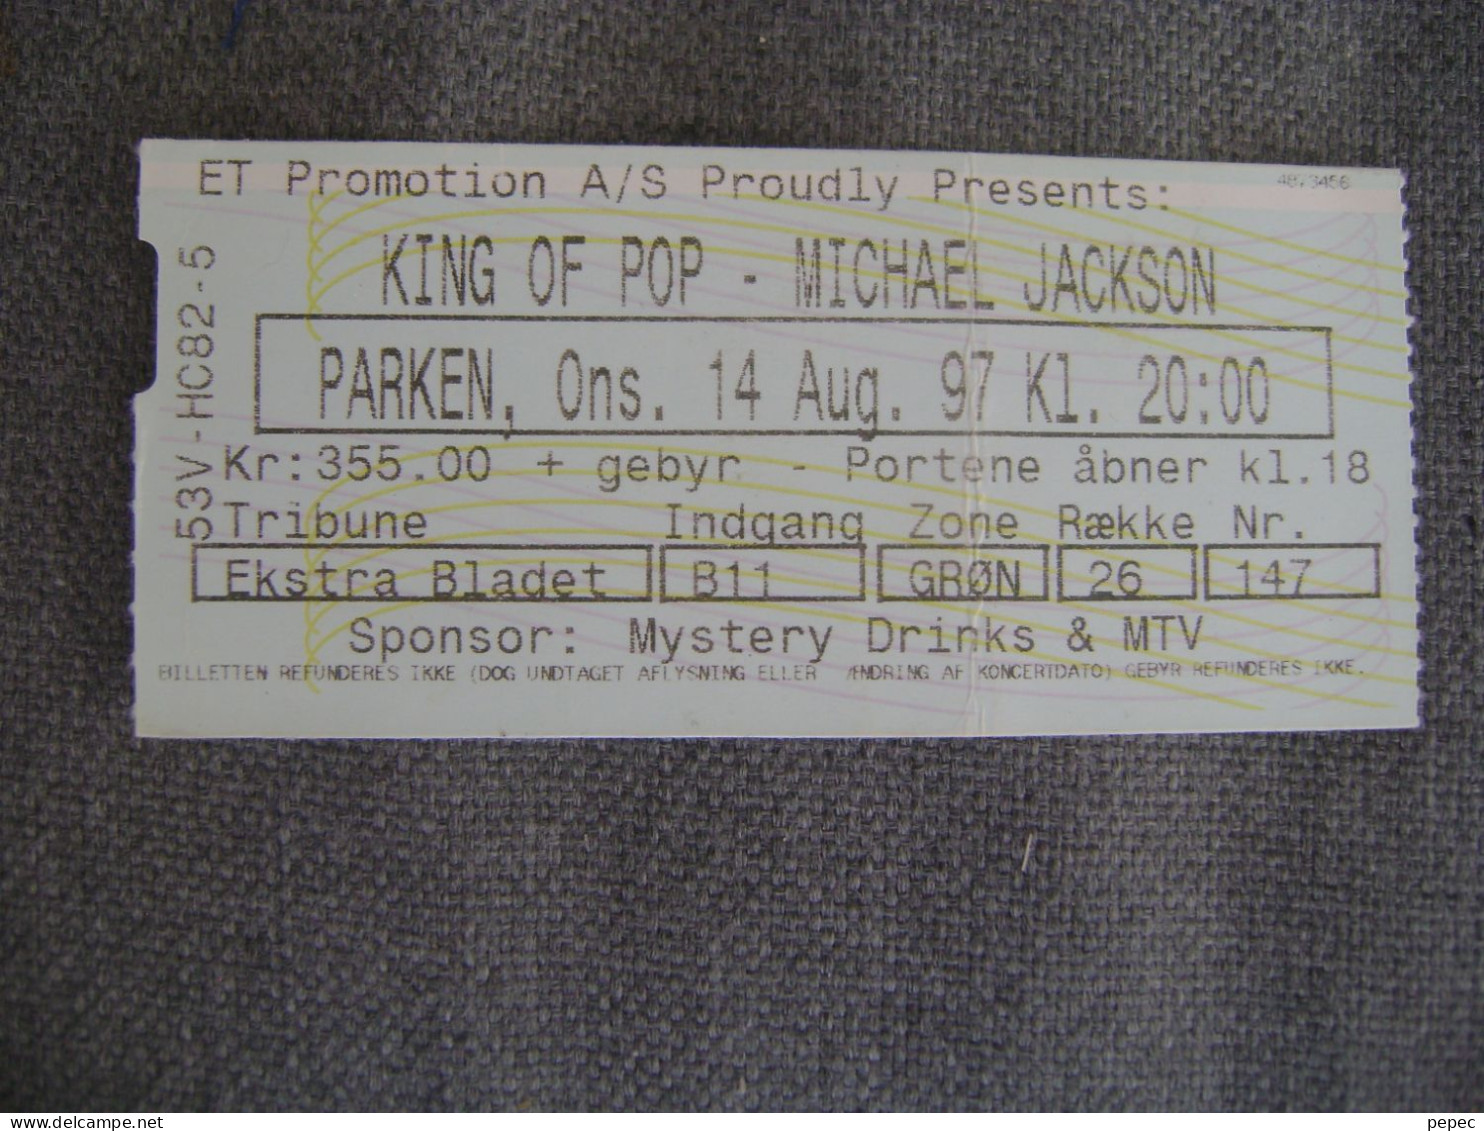 MICHAEL JACKSON  PARKEN - KOPENHAGEN  14/08/1997 - Tickets De Concerts